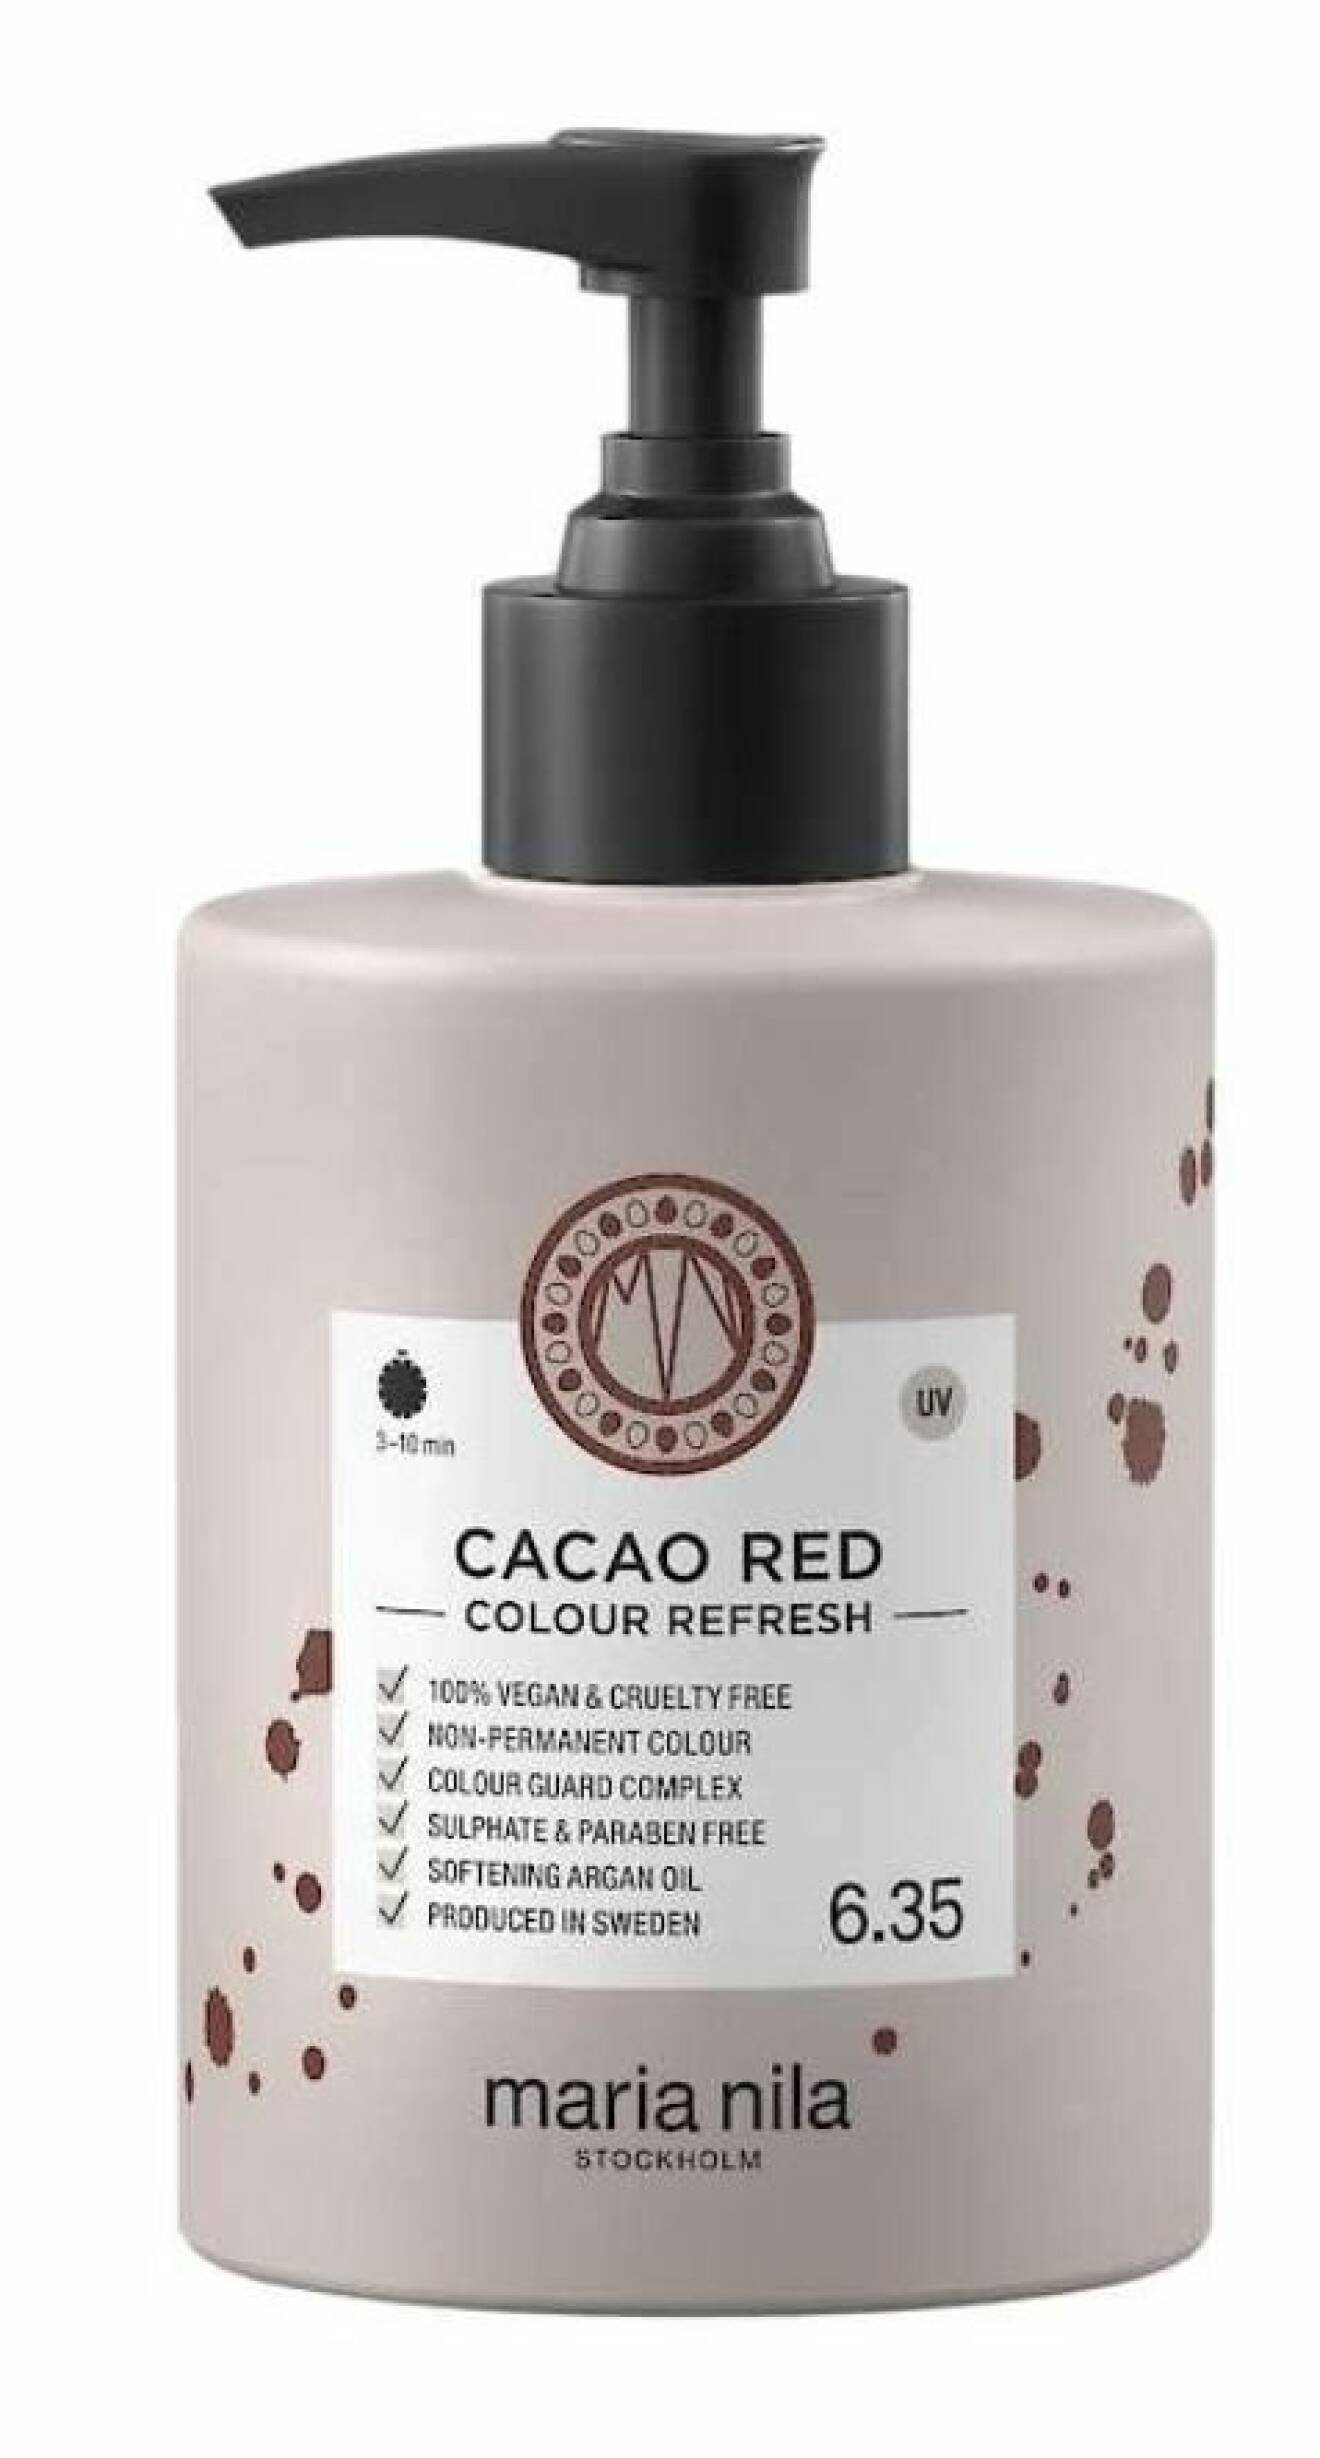 Inpackning med pigment kan användas för att förstärka redan färgat hår eller för att få en ny, tillfällig hårfärg. Nyansen heter Cacao Red och kommer från Maria Nila, 249 kr.